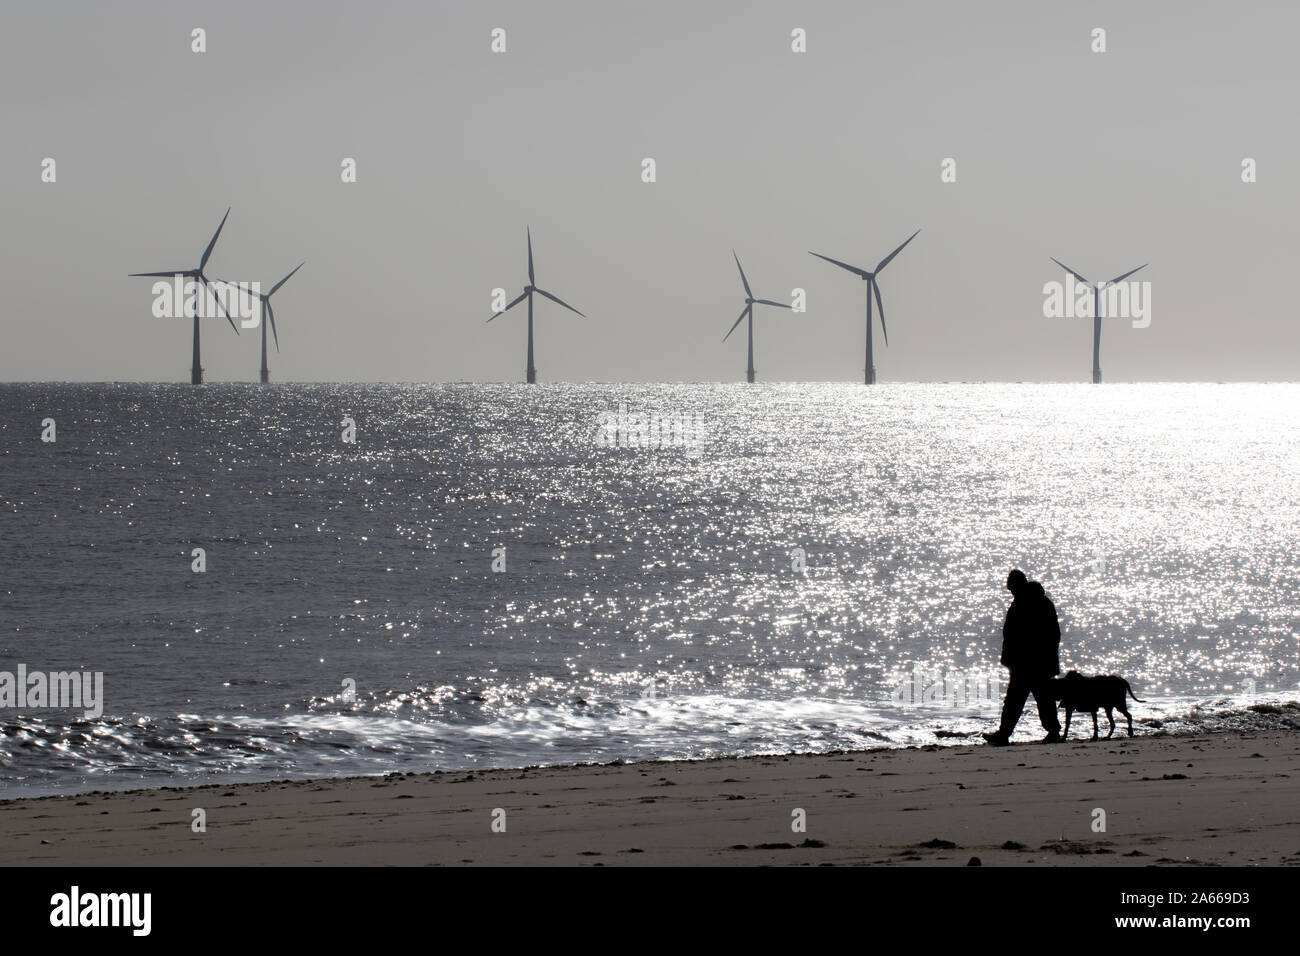 Einsamkeit und Abgeschiedenheit. Friedliche Landschaft Bild des einsamen Person zu Fuß einen Hund. Mans bester Freund. Windpark Turbinen auf dem Meer Strand Horizont. Mindf Stockfoto